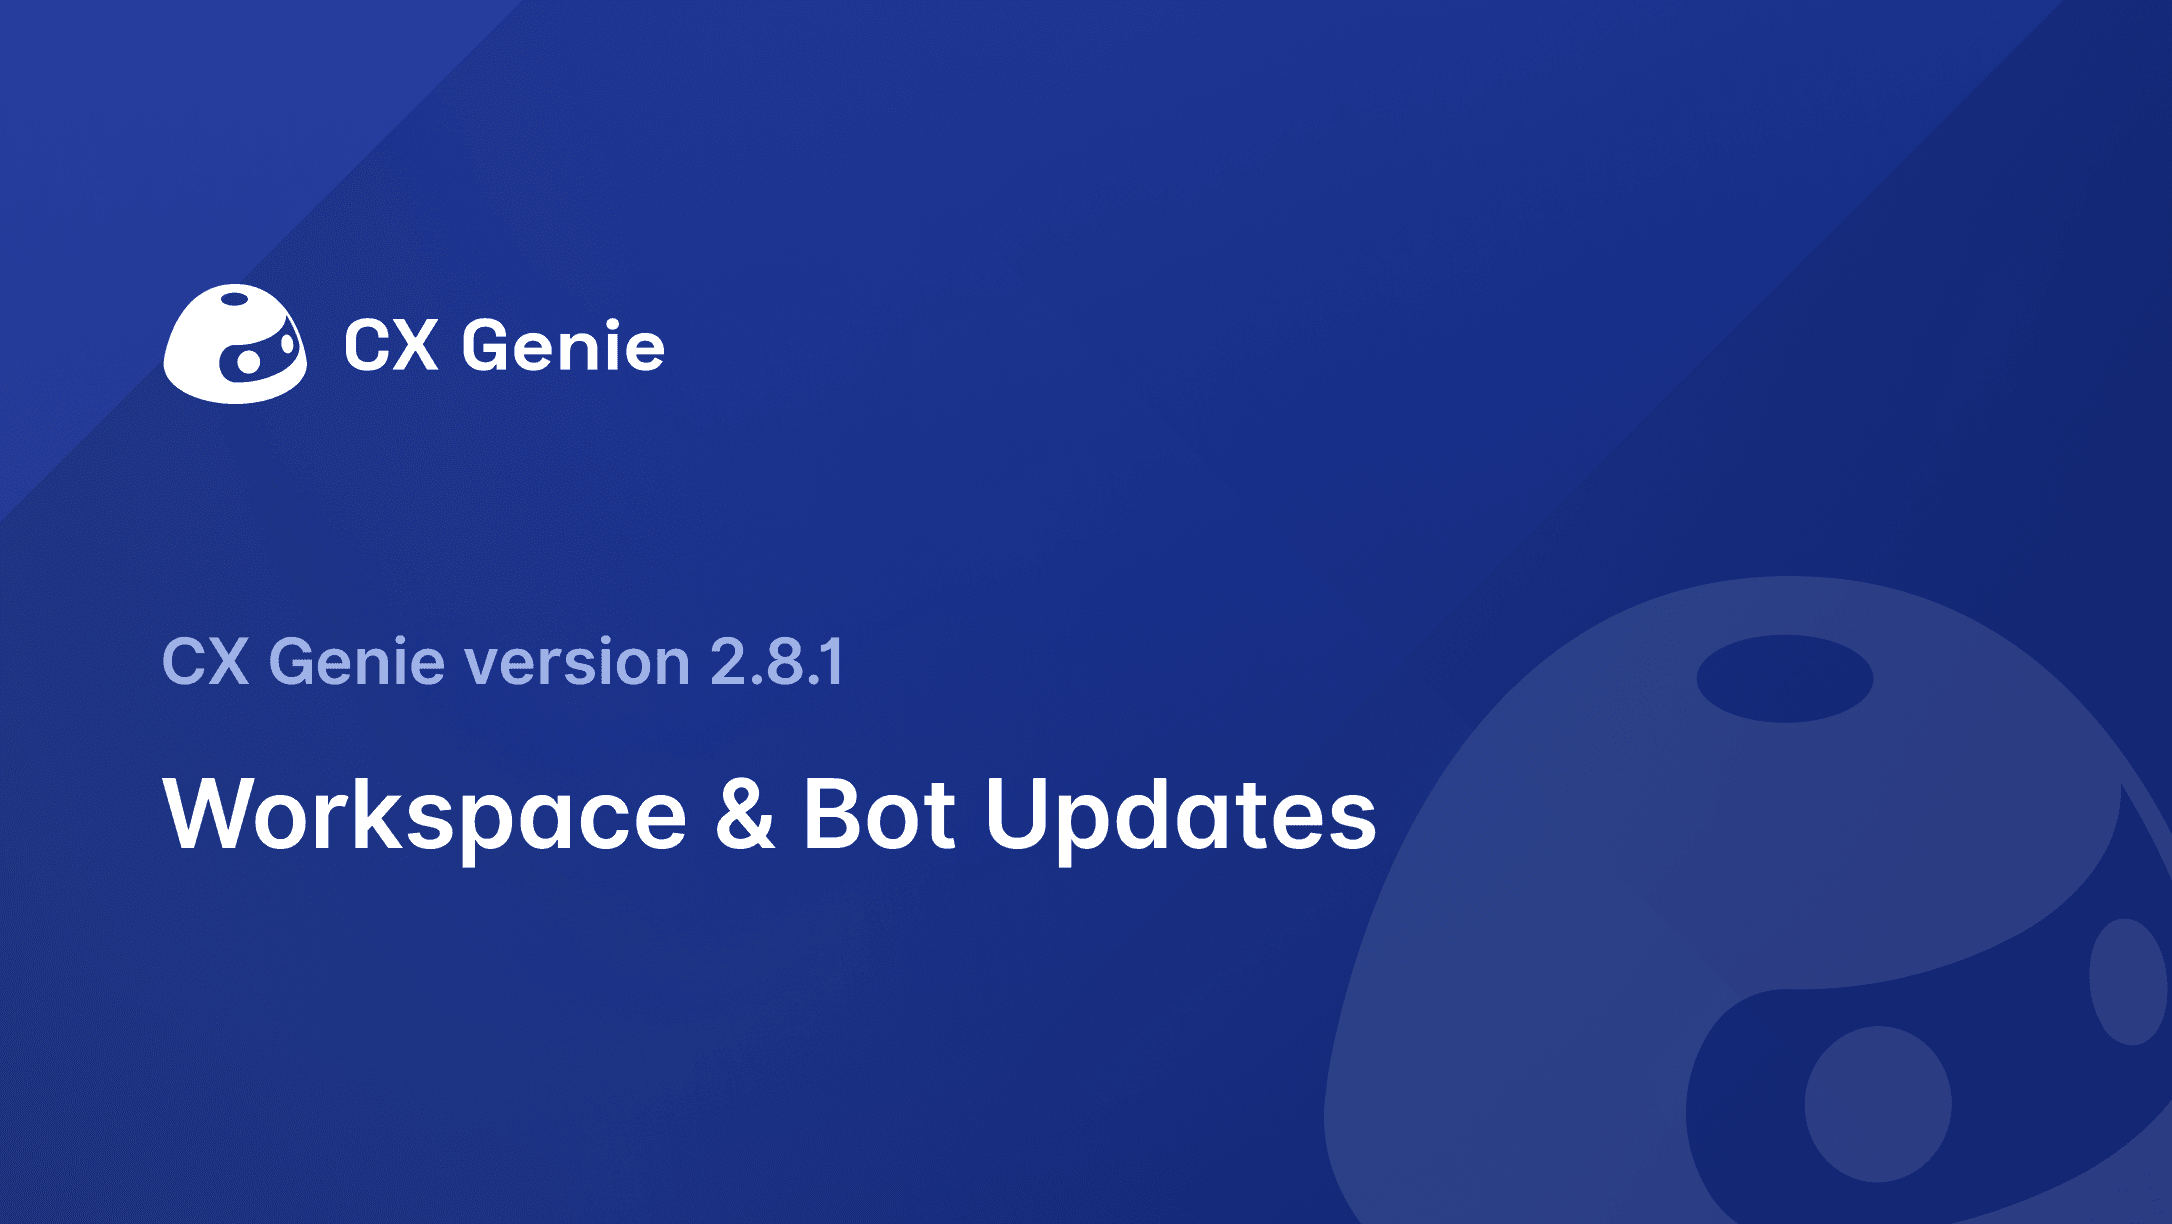 CX Genie Version 2.8.1: Workspace & Bot Updates